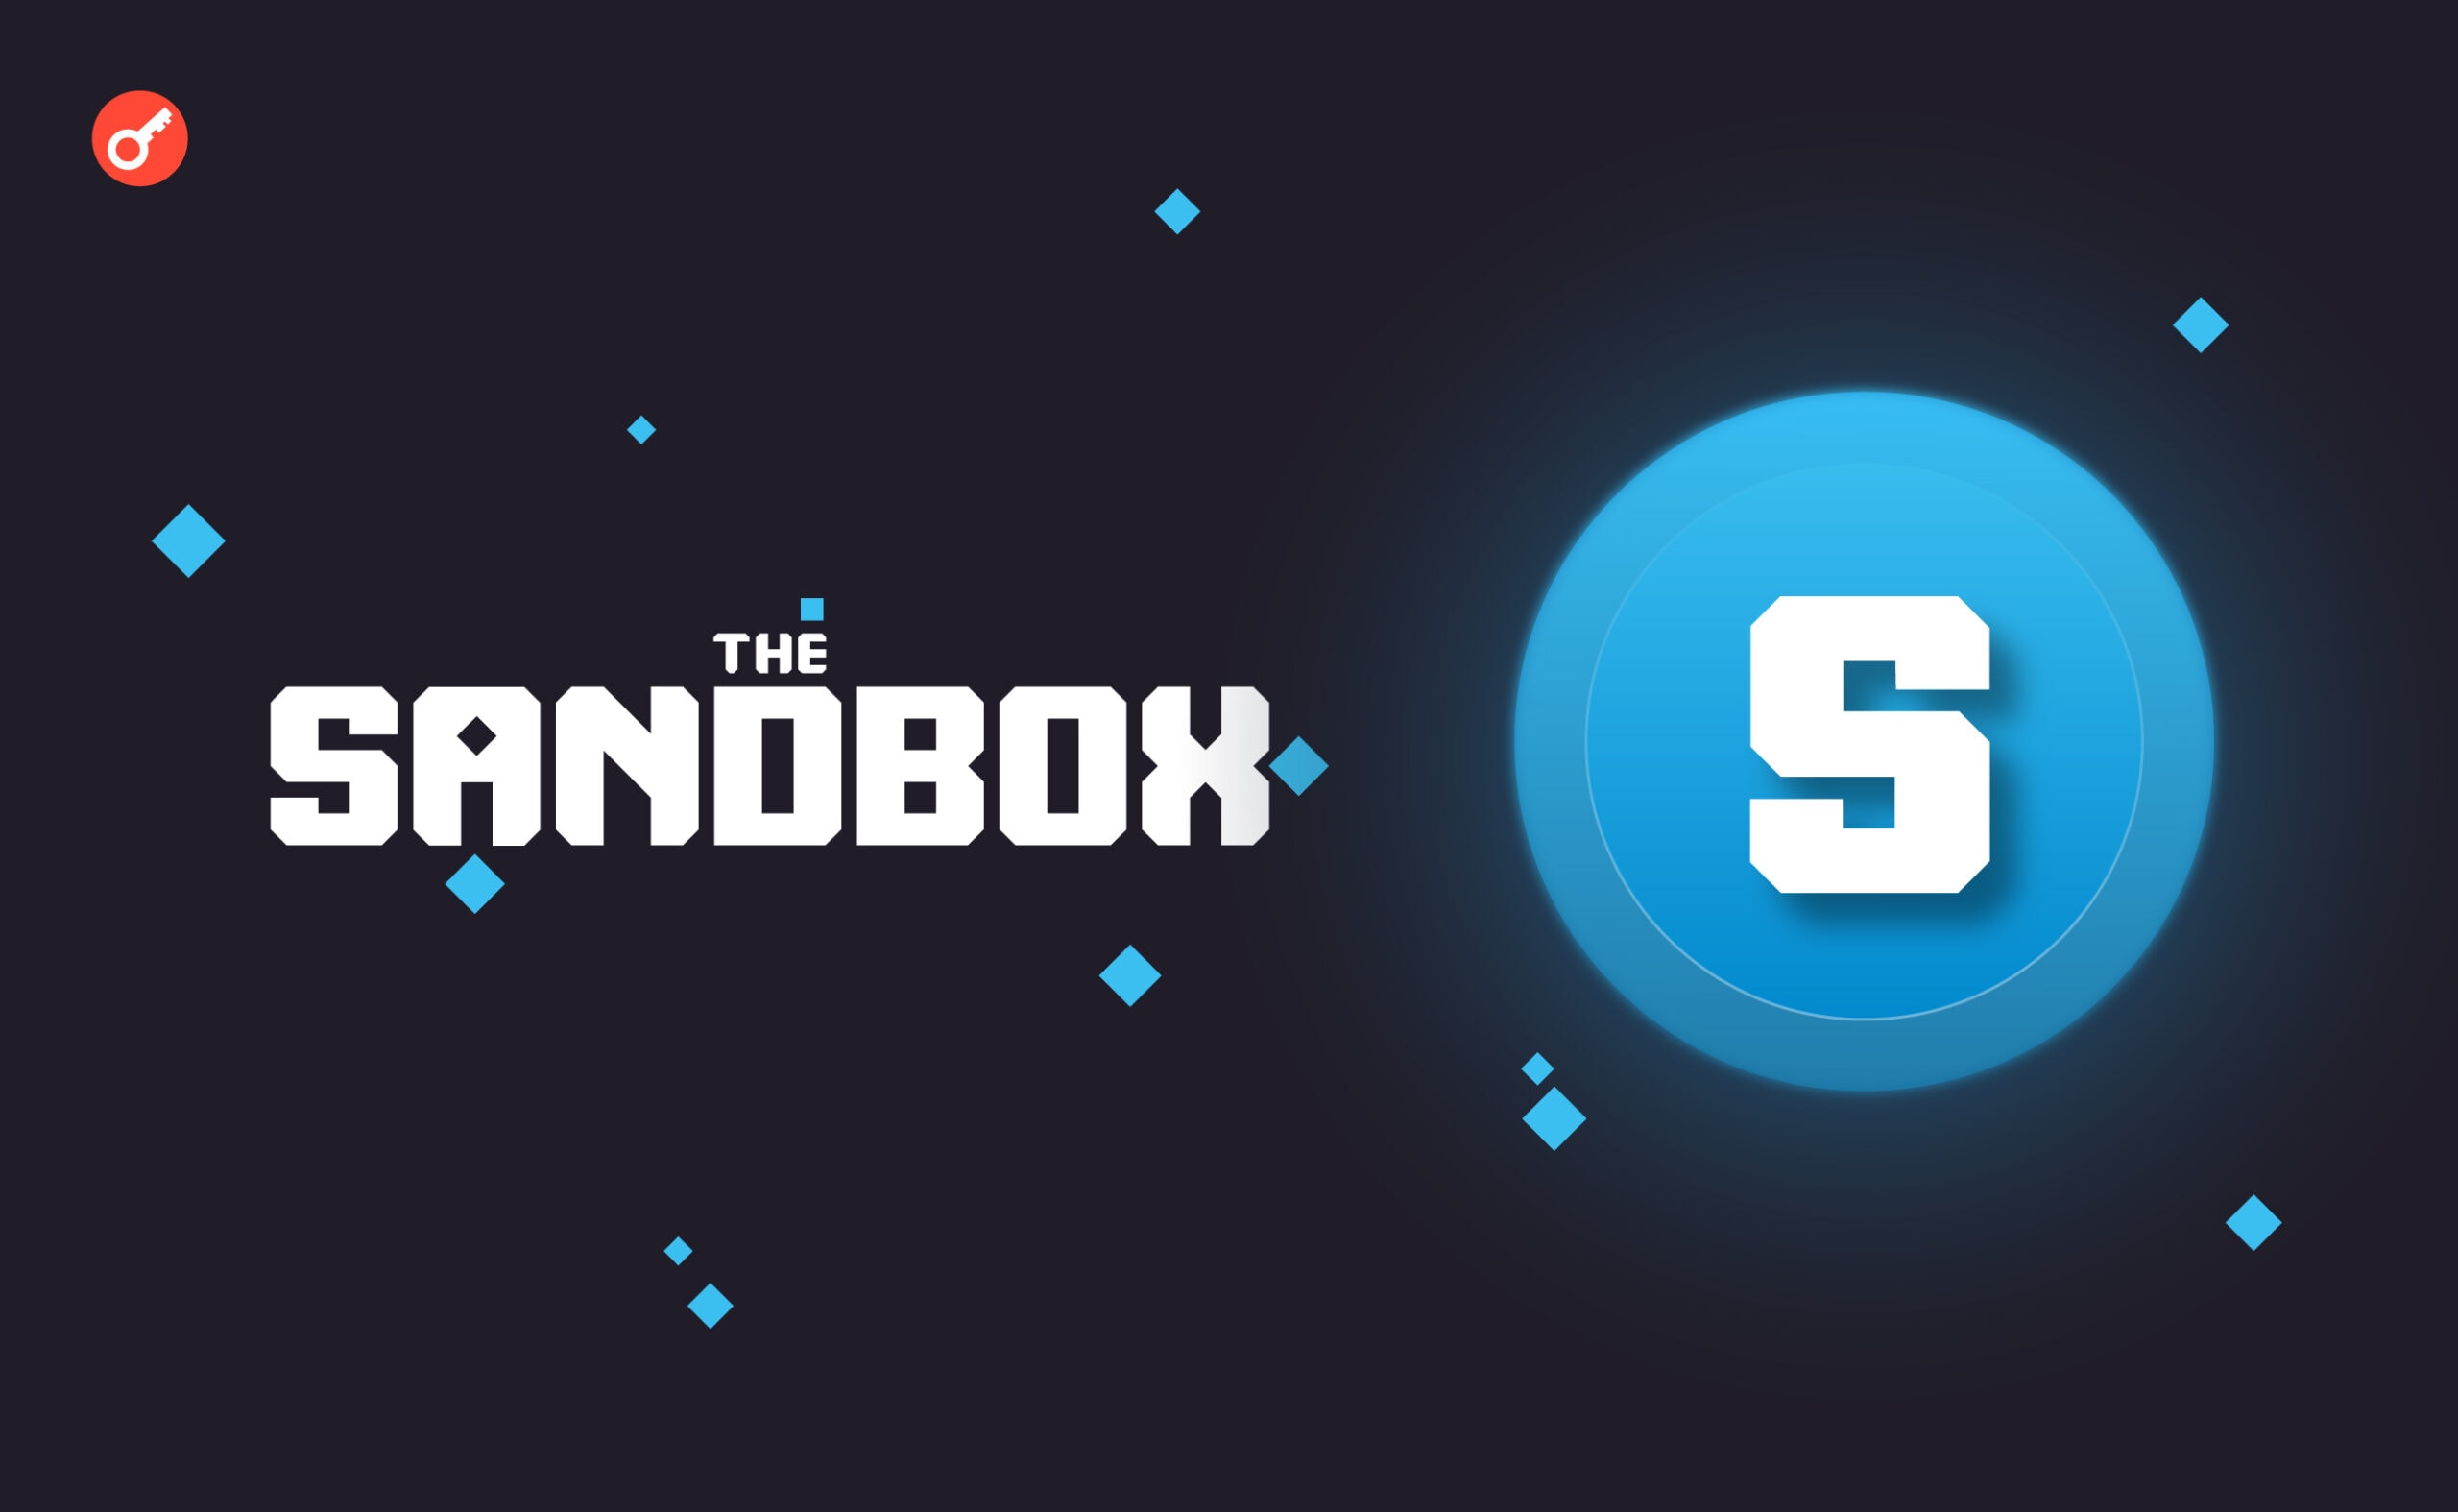 The Sandbox відреагував на претензії SEC до токена SAND. Головний колаж новини.